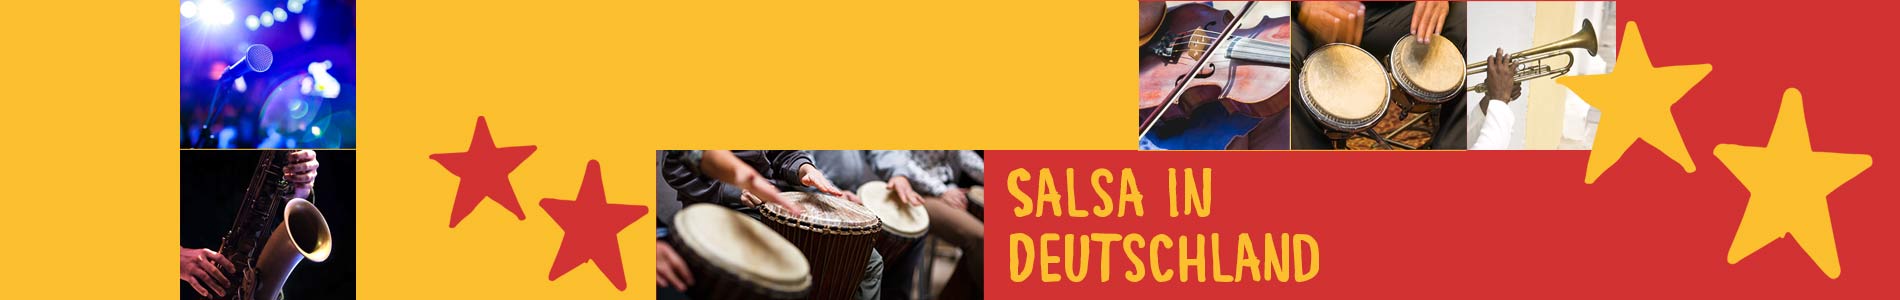 Salsa in Burkau – Salsa lernen und tanzen, Tanzkurse, Partys, Veranstaltungen